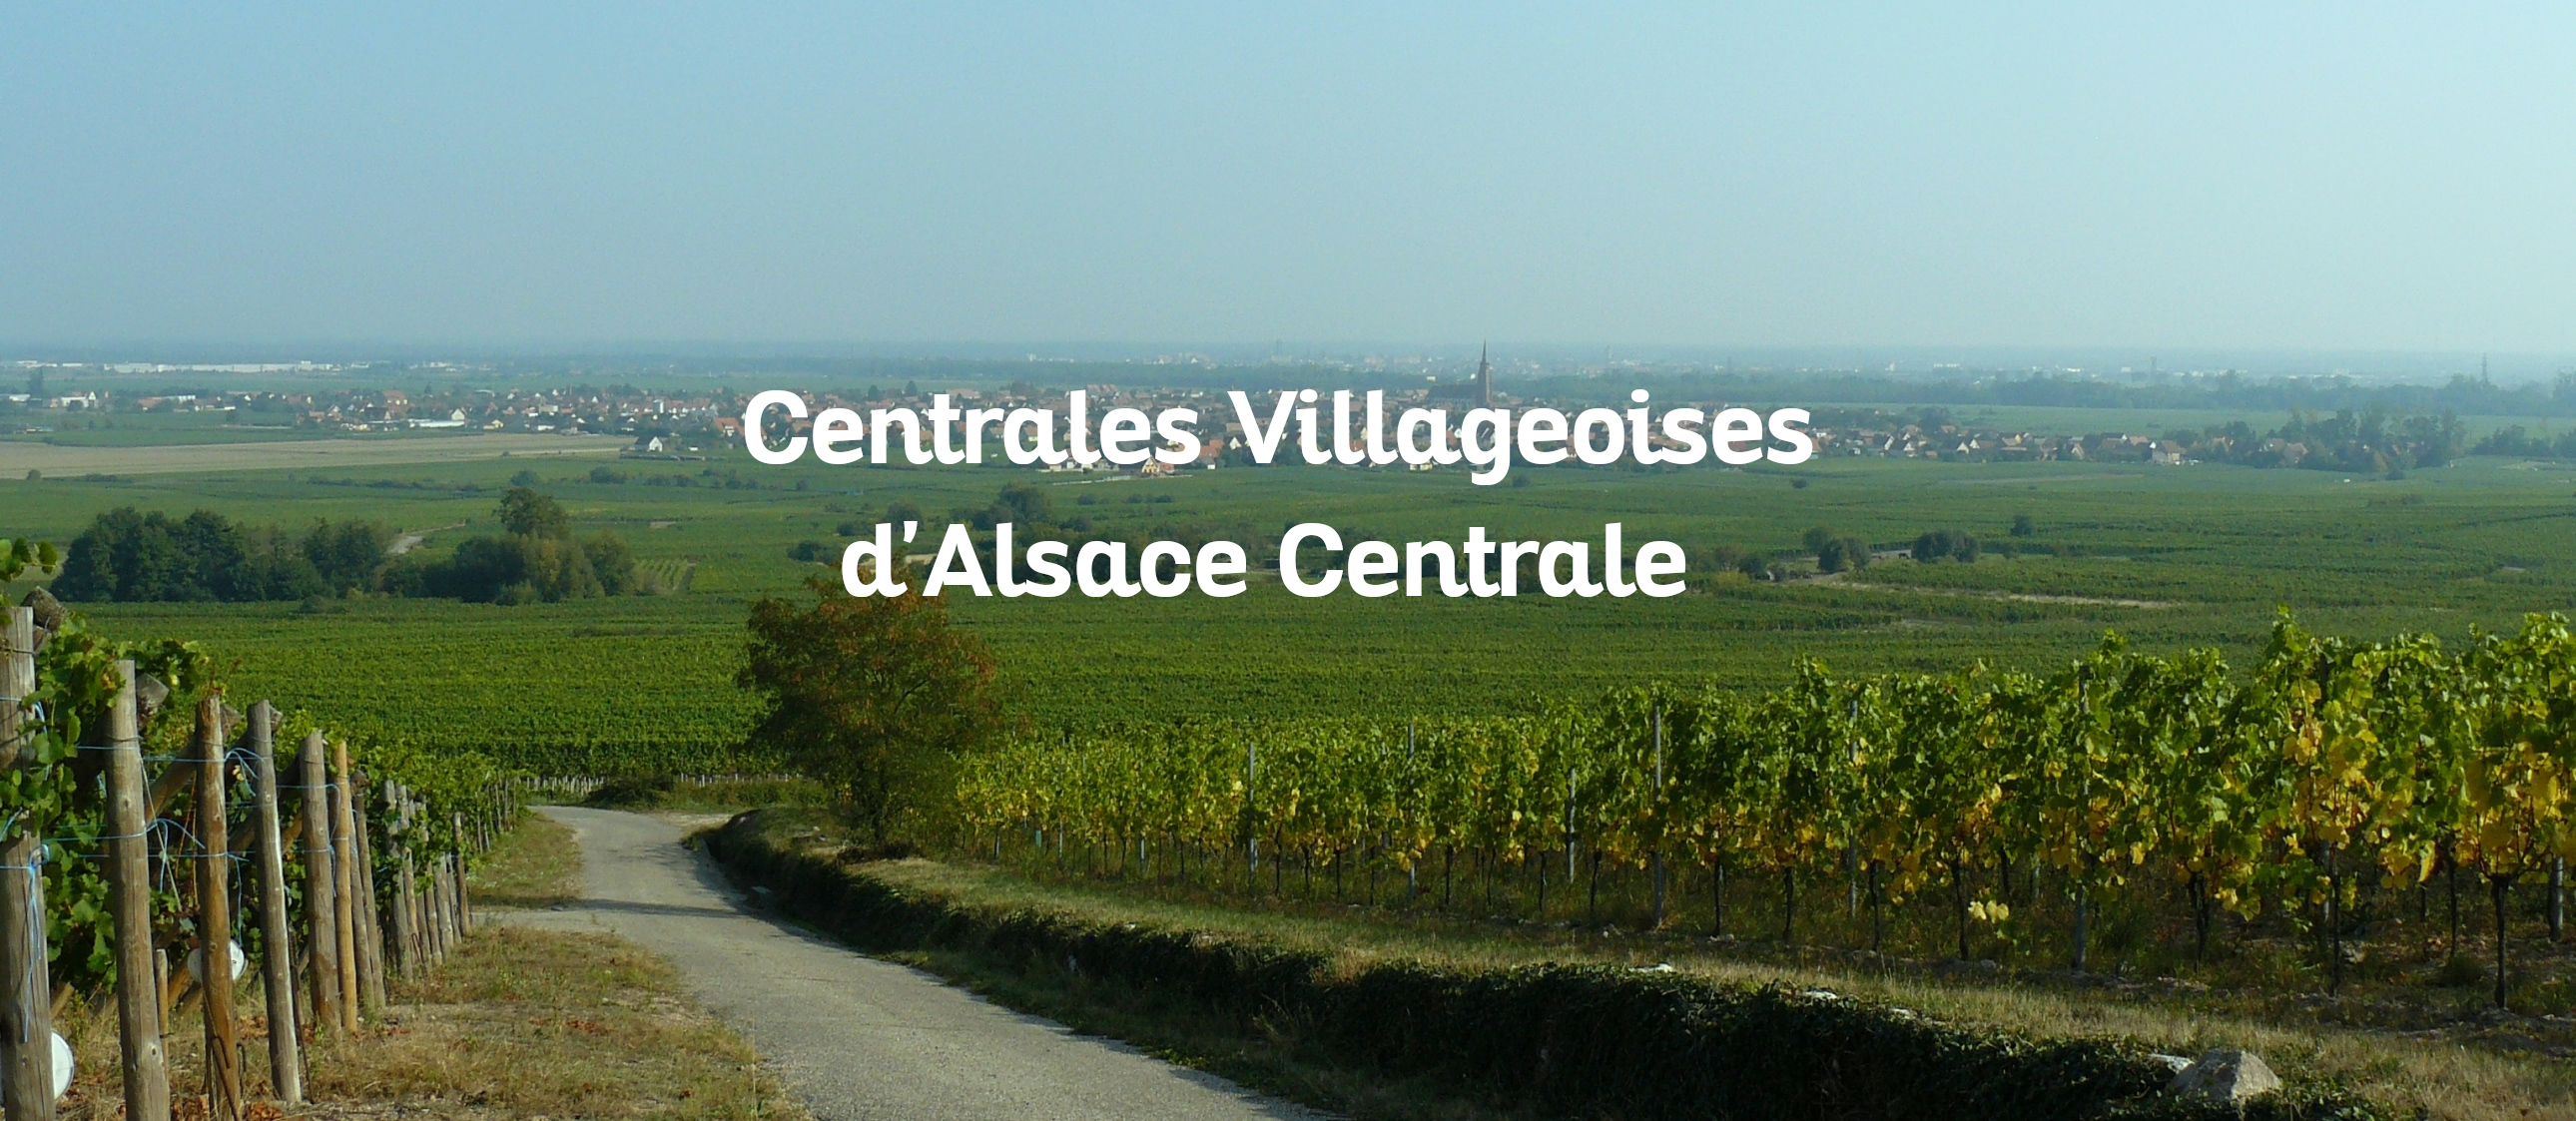 Centrales Villageoises d'Alsace Centrale